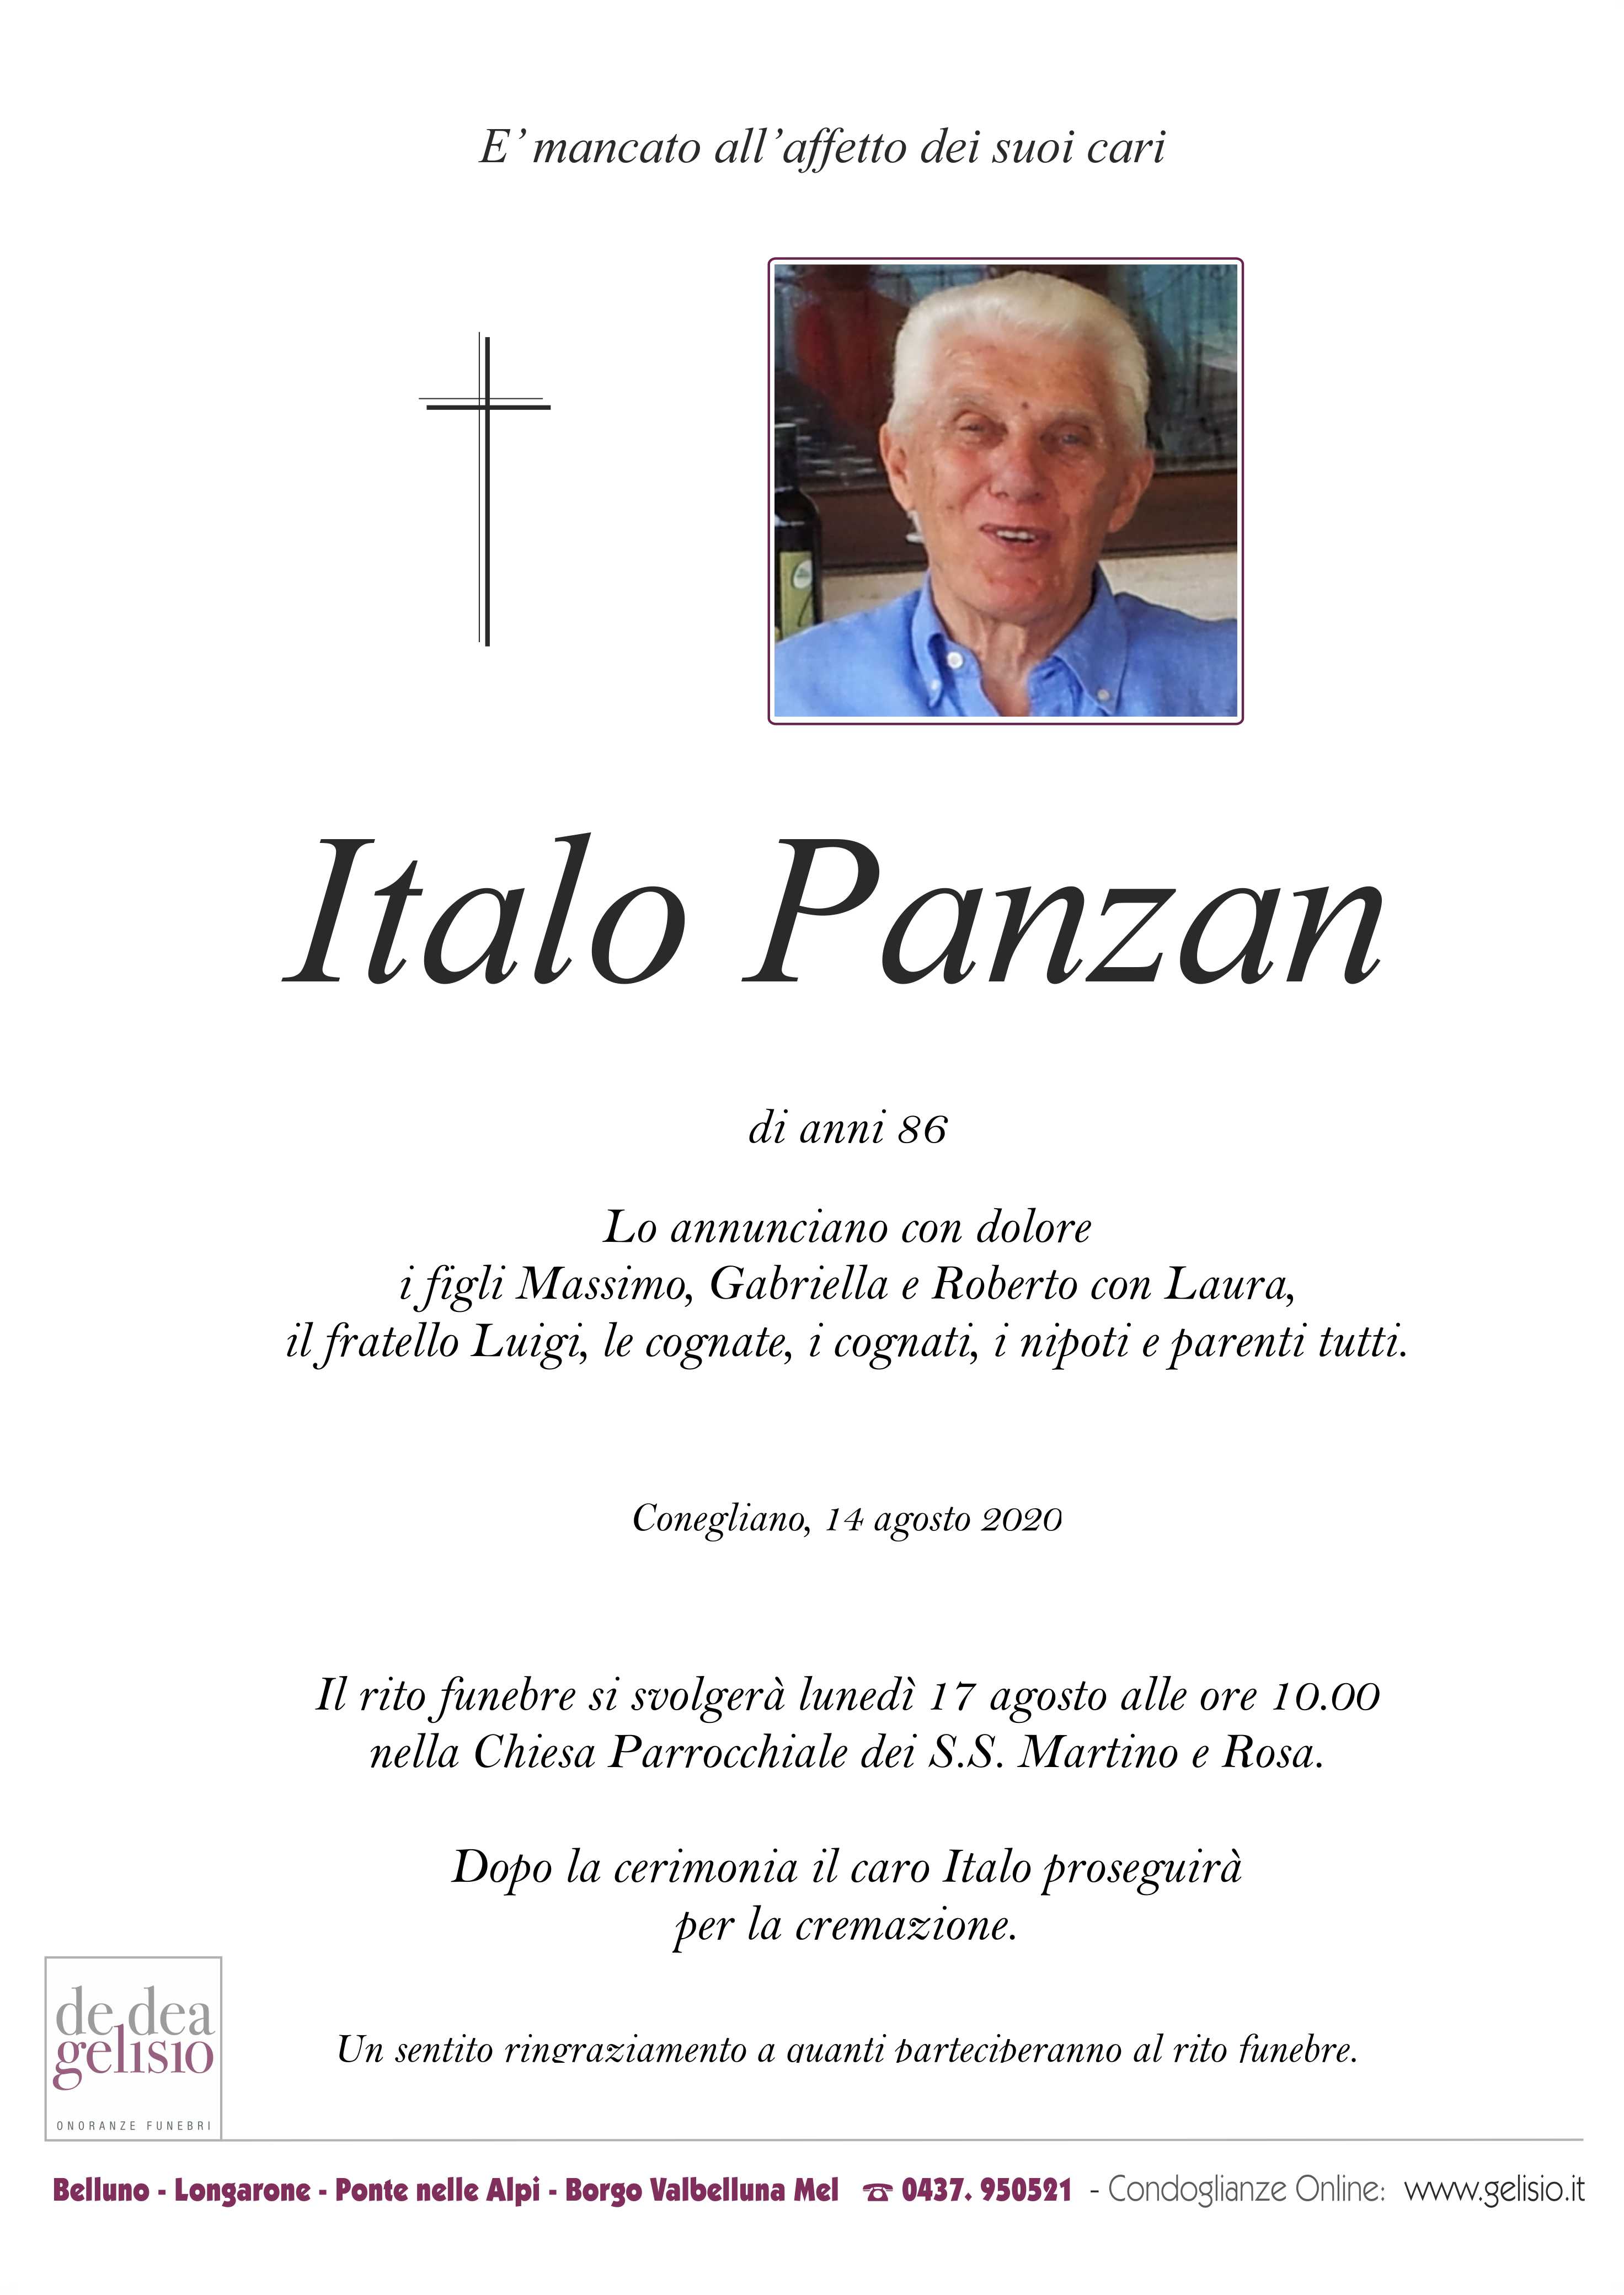 Panzan Italo